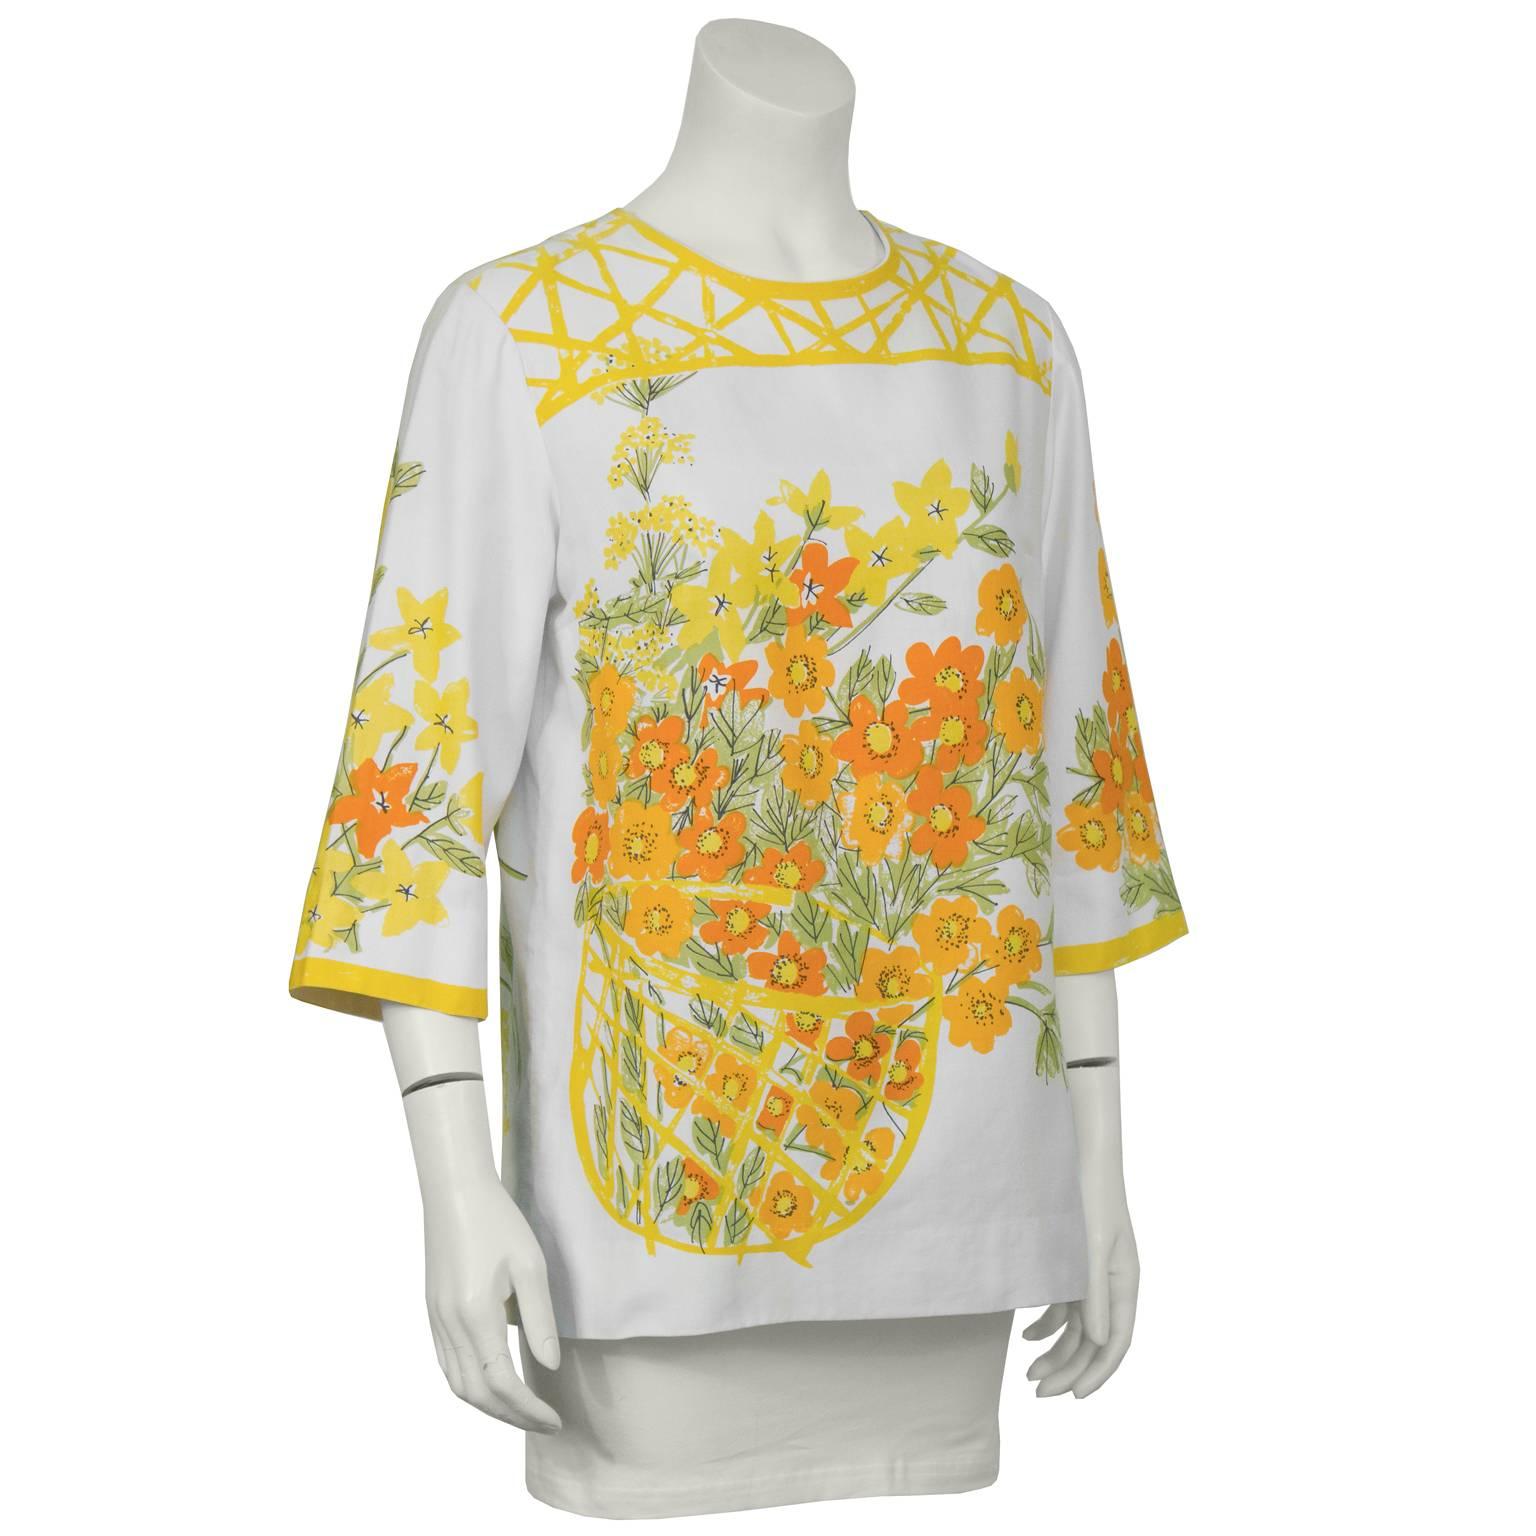 3/4-ärmelige Bluse aus Baumwolle von Vera aus den 1960er Jahren. Die Bluse hat einen typisch sommerlichen Aquarell-Blumenprint aus orangefarbenen und gelben Blumen mit grünen Blättern in einem Korb auf der Vorder- und Rückseite sowie auf den Ärmeln.